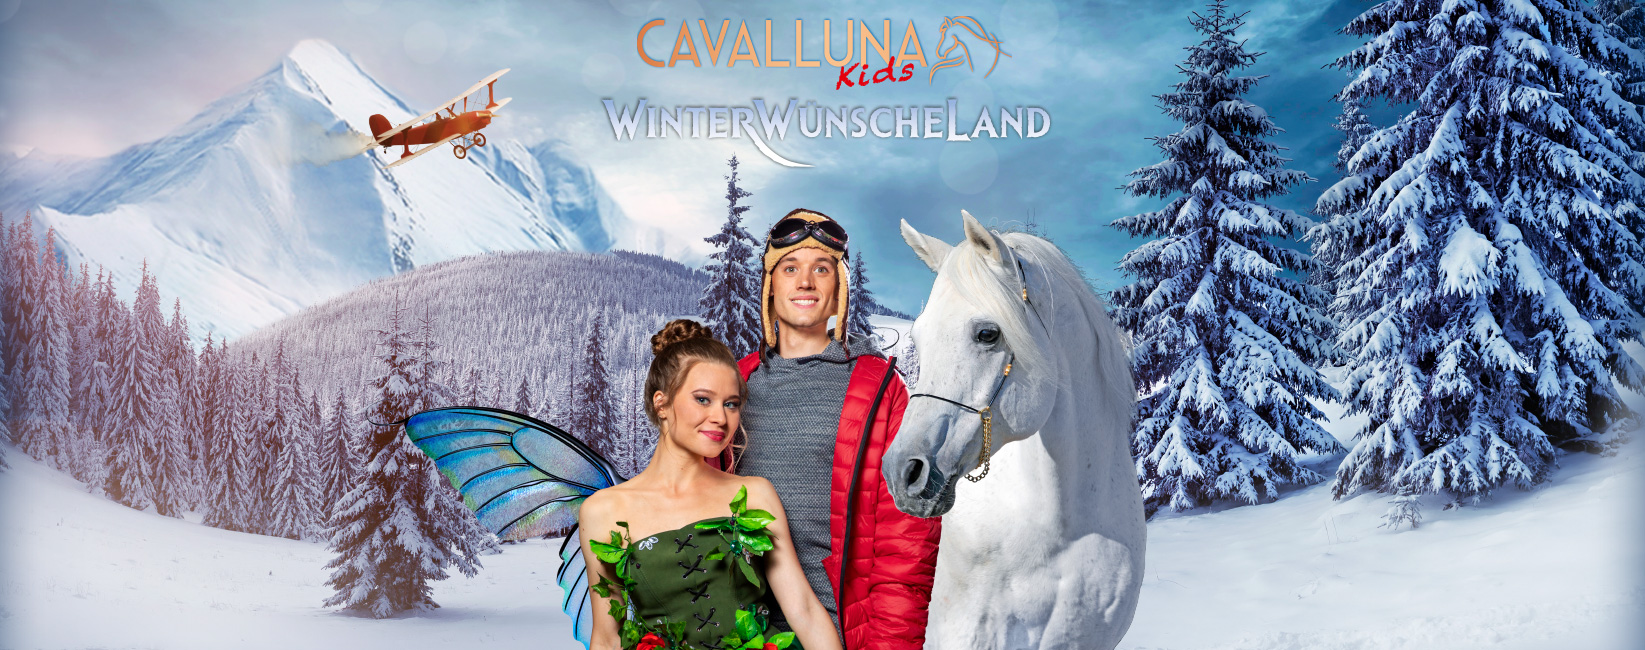 28.12.23 – CAVALLUNA Kids - WinterWünscheLand